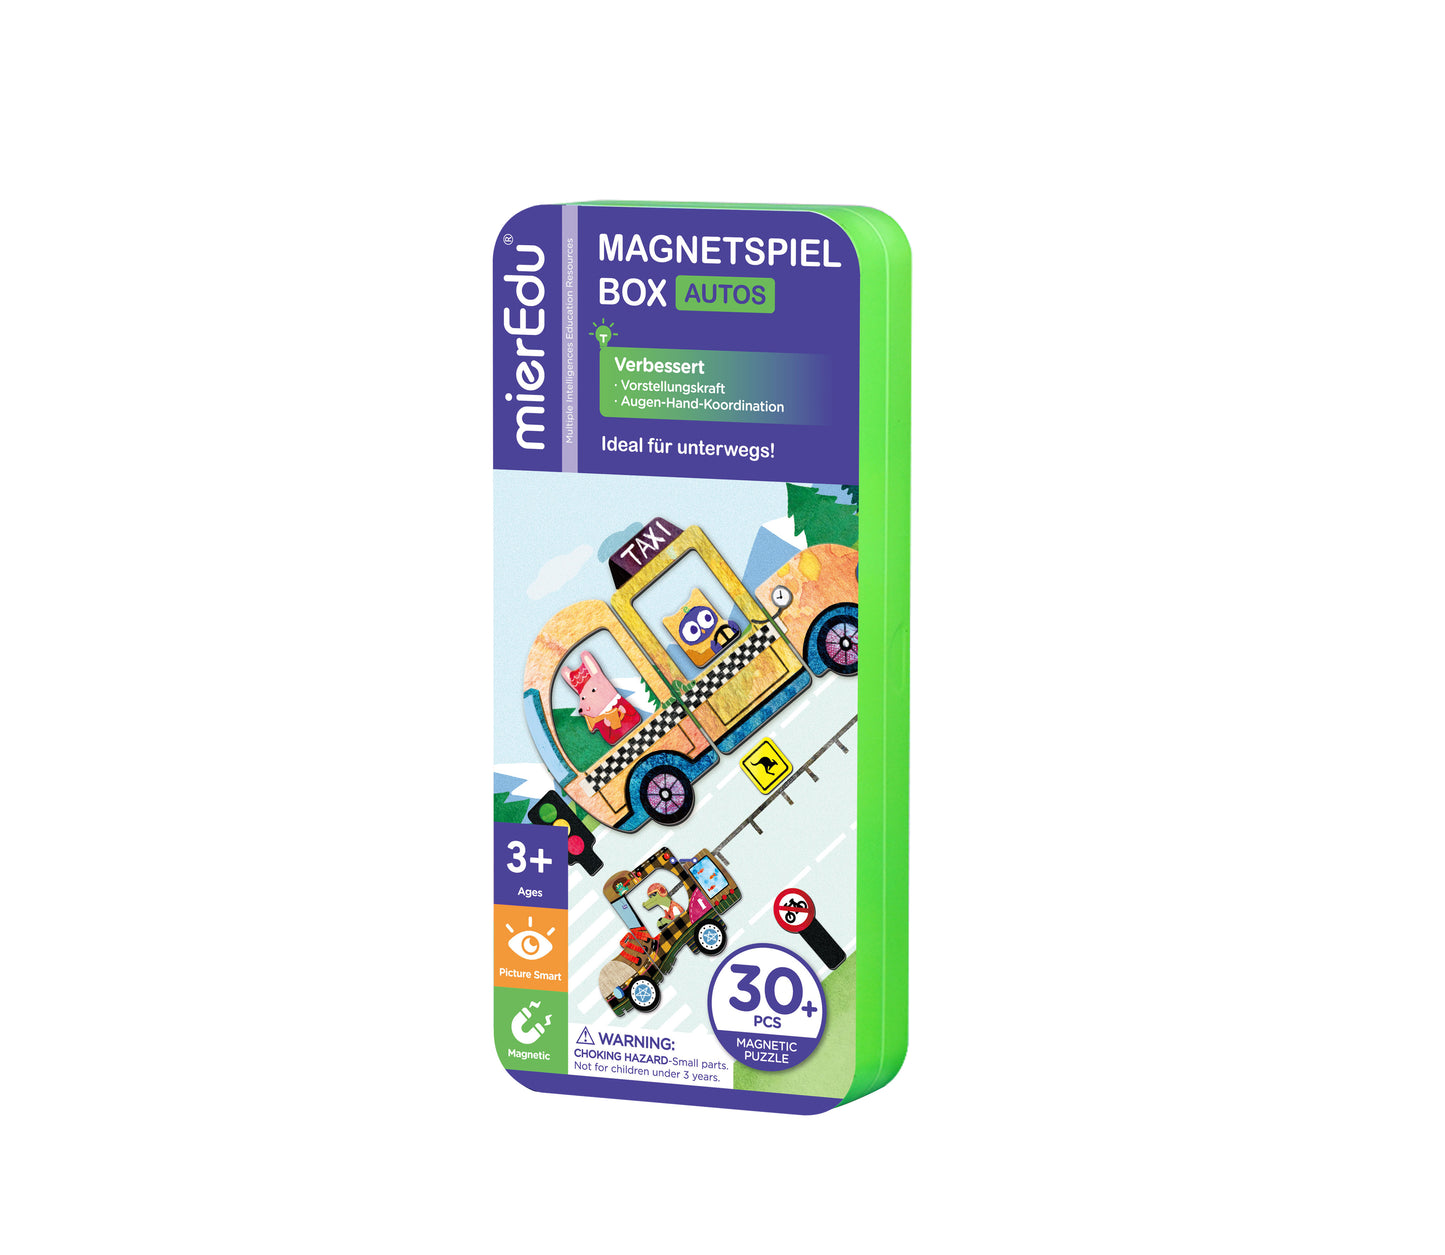 mierEdu Magnetspiel Box, Autos,Fördert Motorik und Fantasie, Ideal für Zuhause und als Reisespiel für Kinder, Magnet Spielzeug